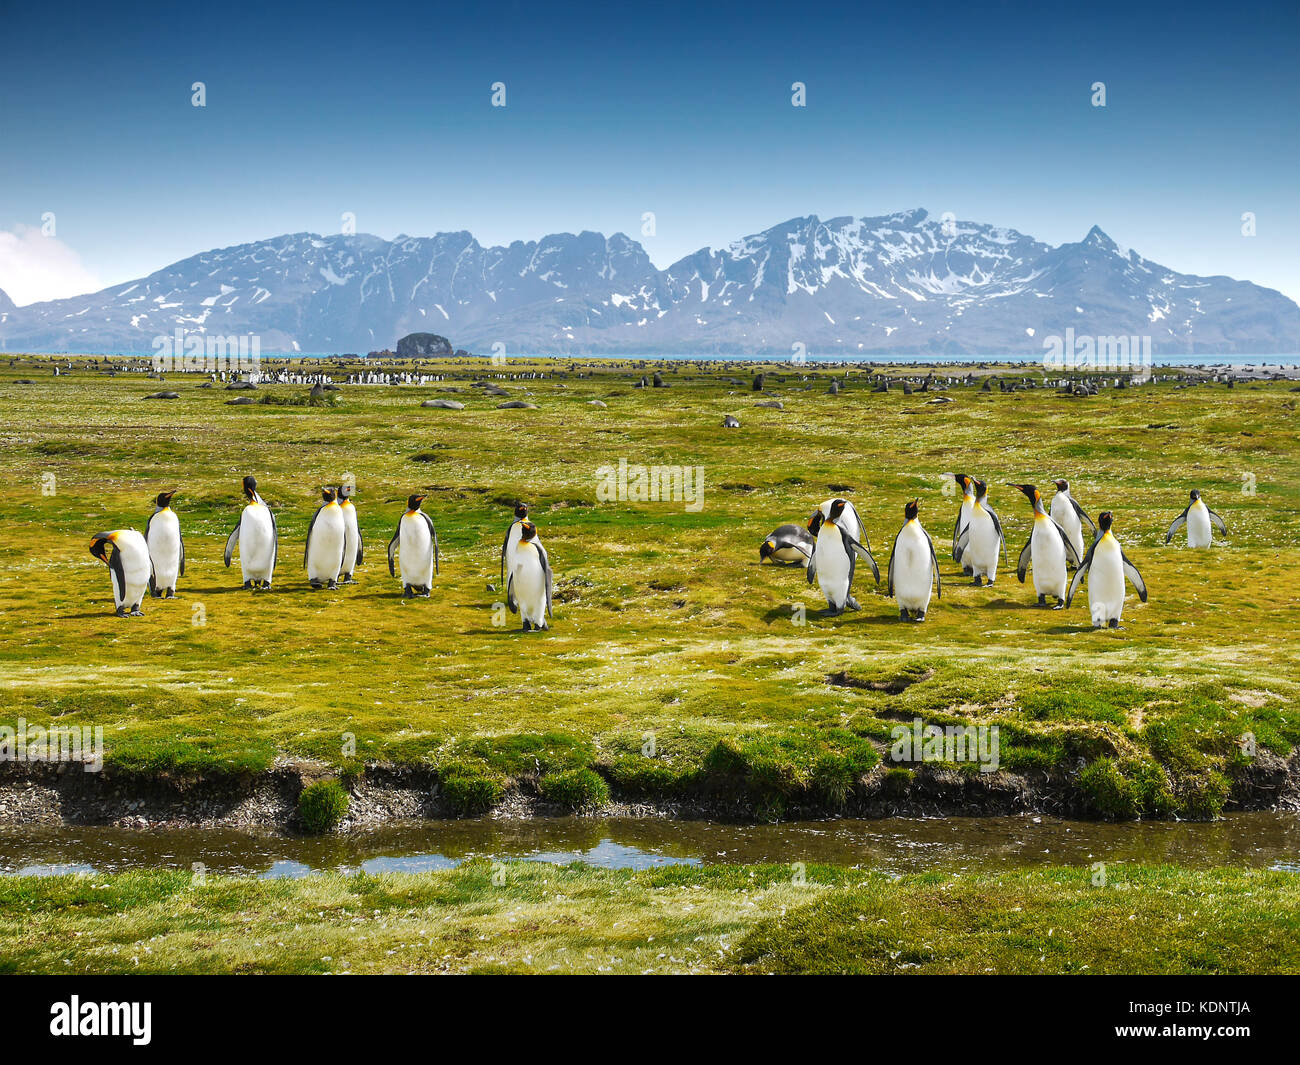 Un gruppo di pinguini sull Isola Georgia del sud a camminare verso la telecamera su un pianoro prativo con montagne innevate sullo sfondo. Foto Stock